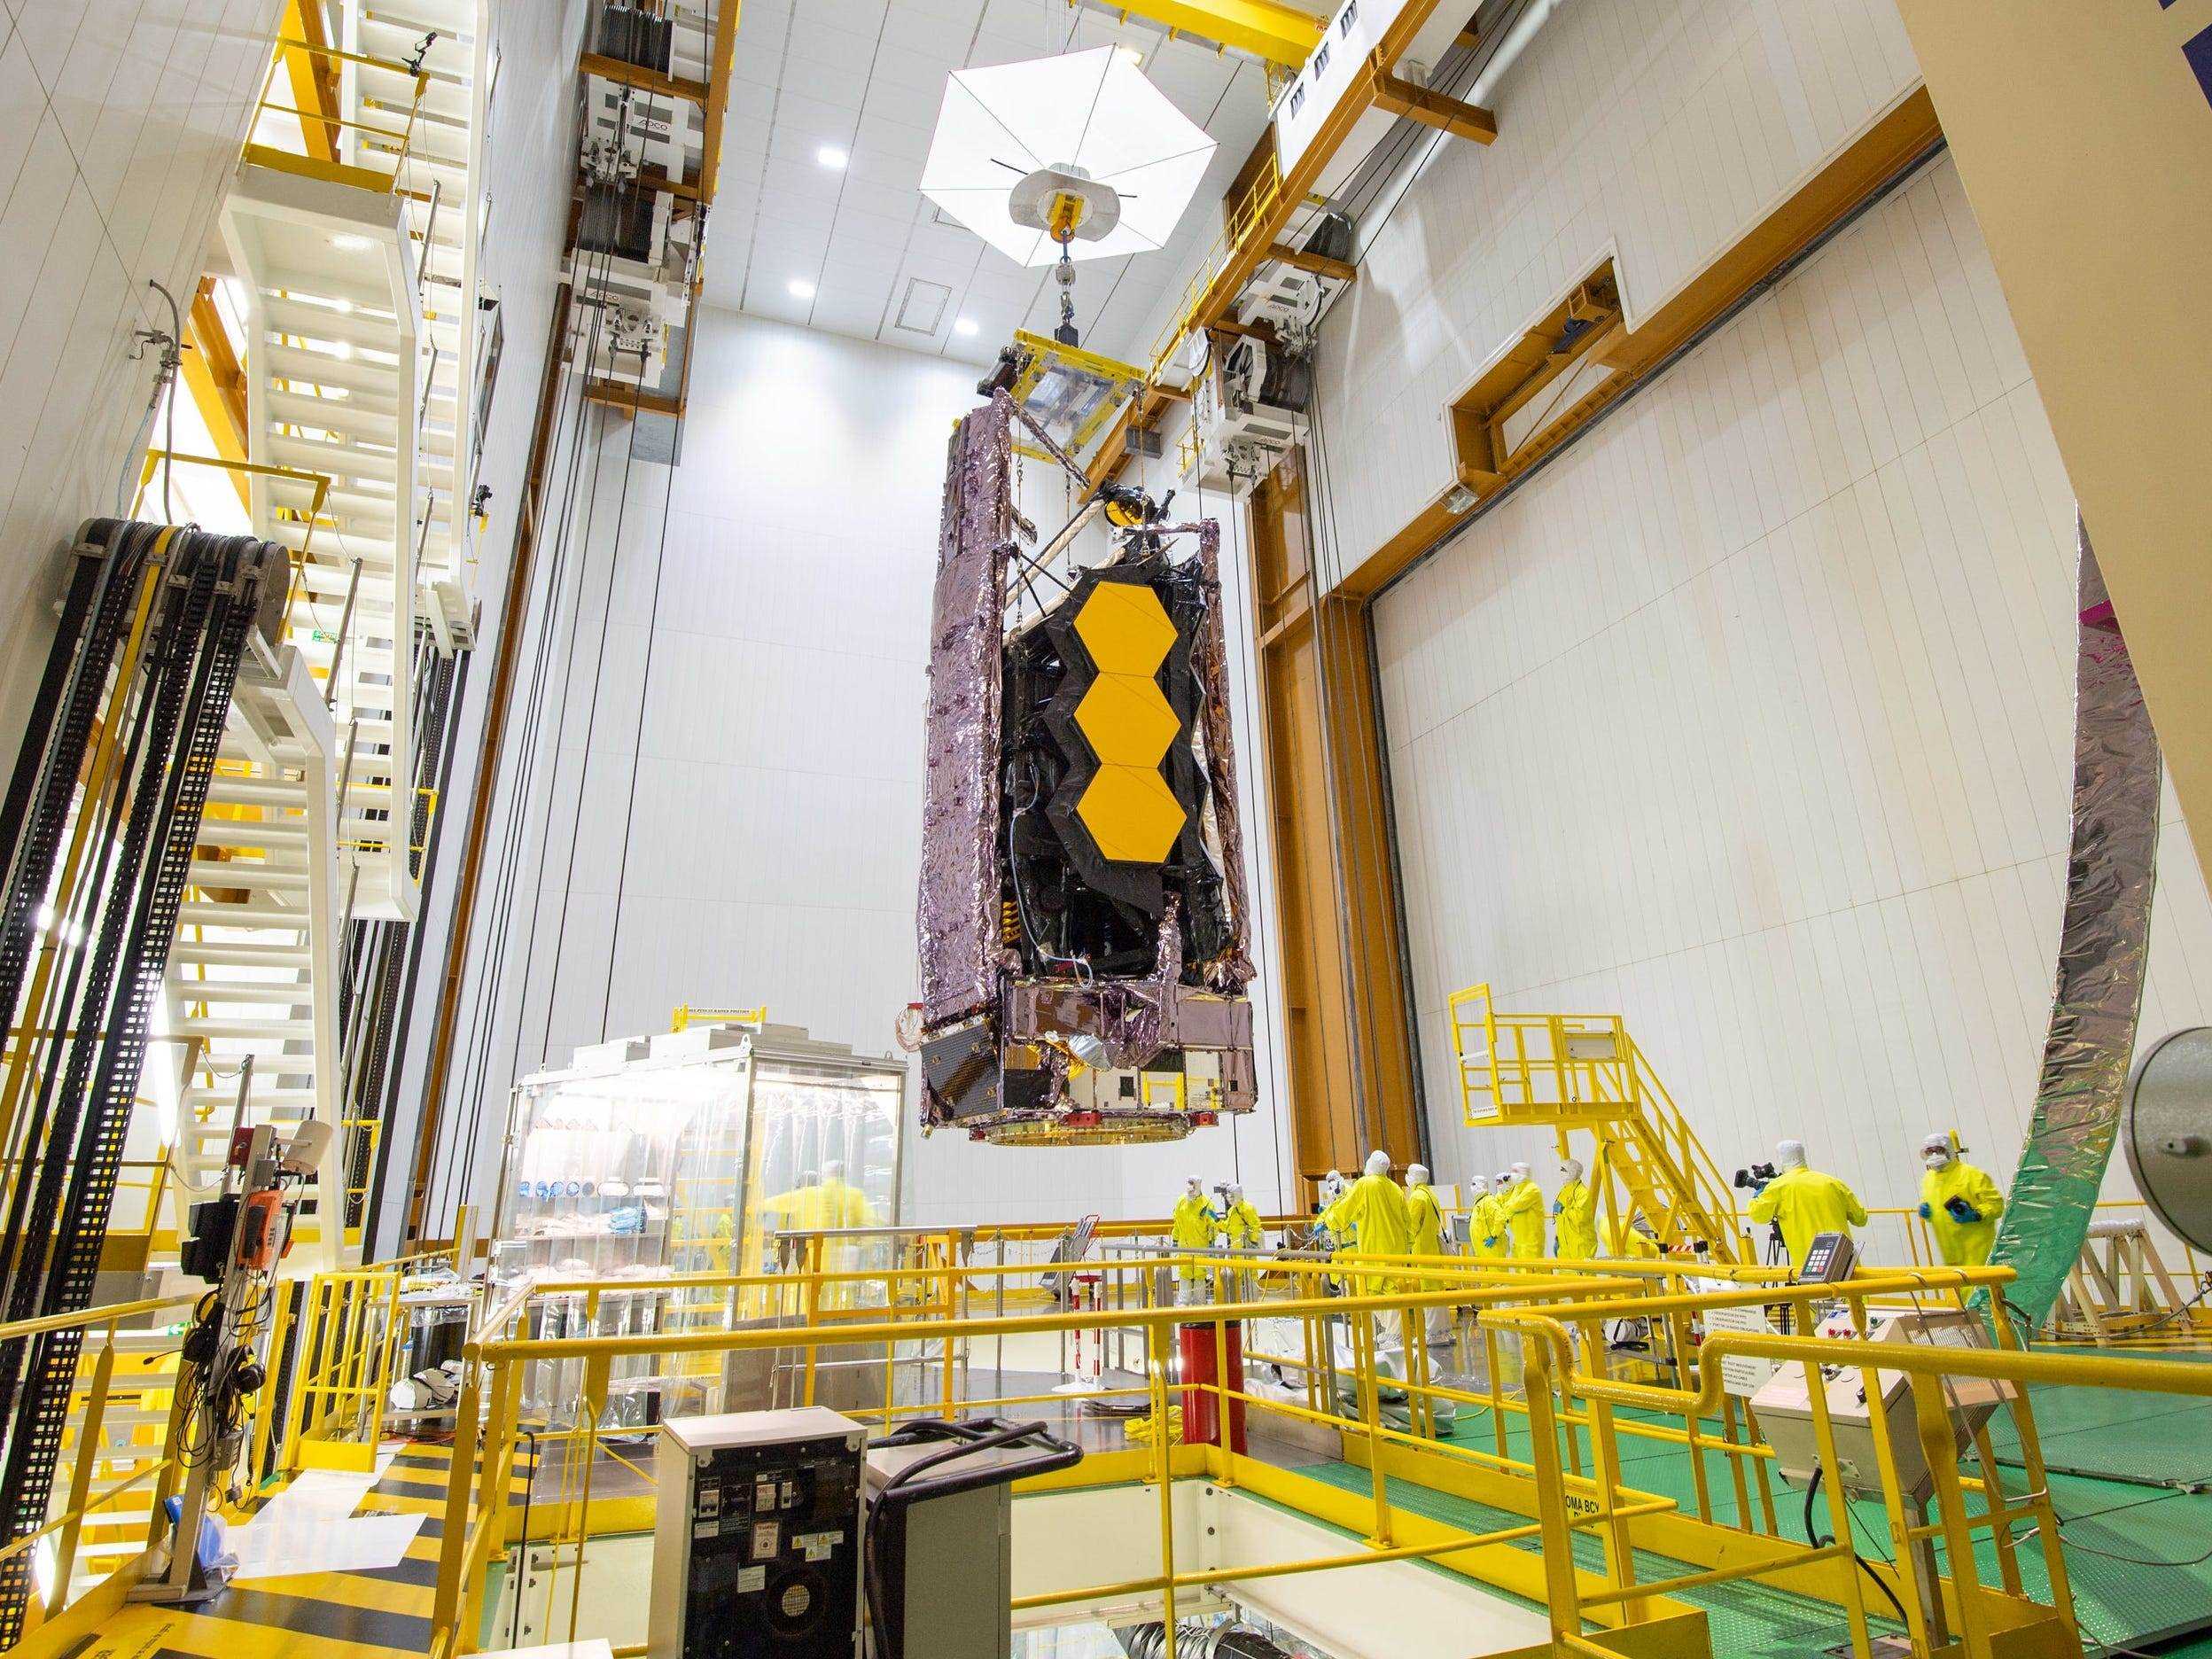 James Webb Weltraumteleskop zusammengeklappt hängend über Loch mit gelbem Geländer